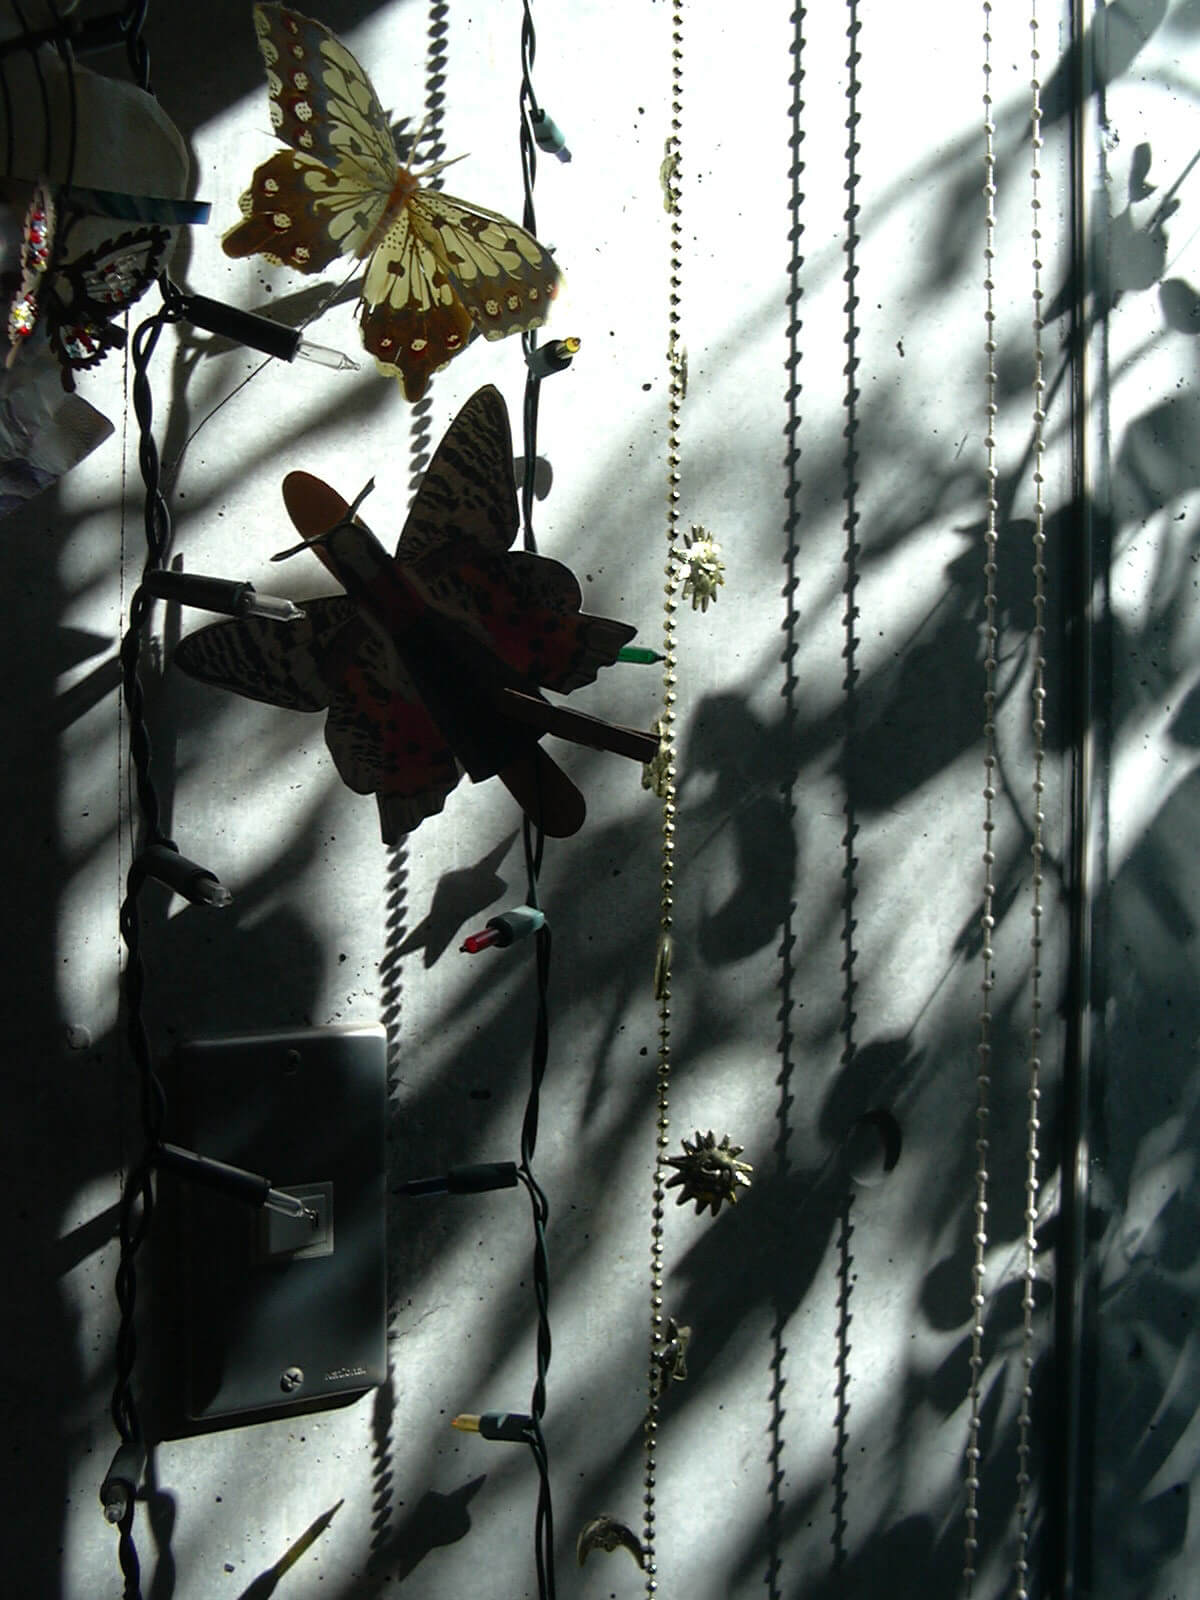 吊るされたチェーンライトと、蝶の飾り物と、コンクリートの壁に映ったそれらの影